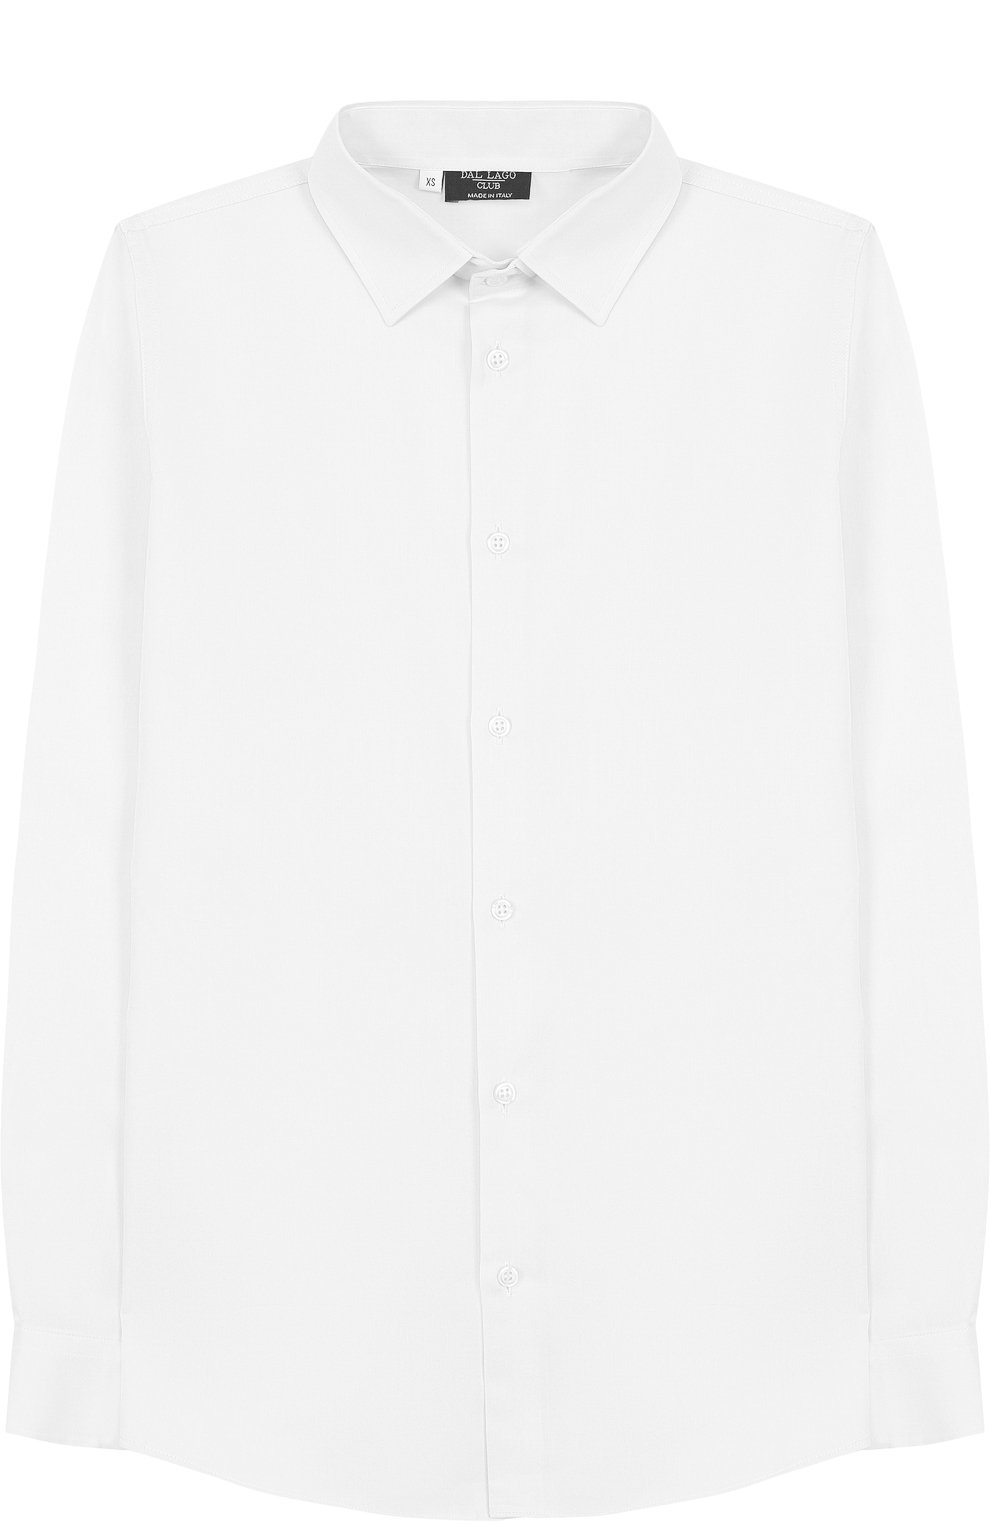 Рубашки Dal Lago, Хлопковая рубашка с воротником кент Dal Lago, Италия, Белый, Хлопок: 100%;, 1755632  - купить